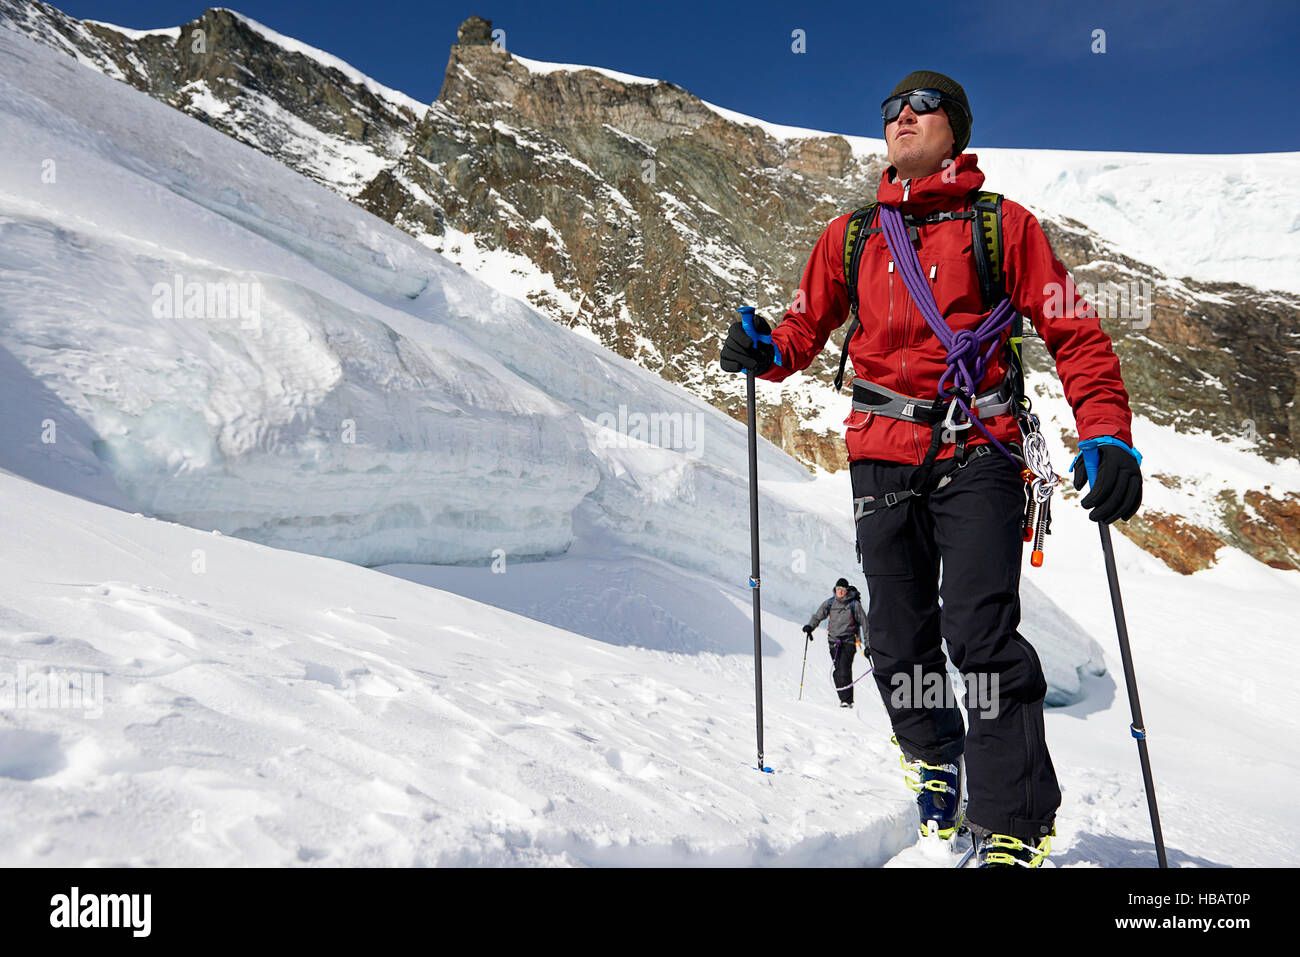 Man ski touring on snow-covered mountain, Saas Fee, Switzerland Stock Photo